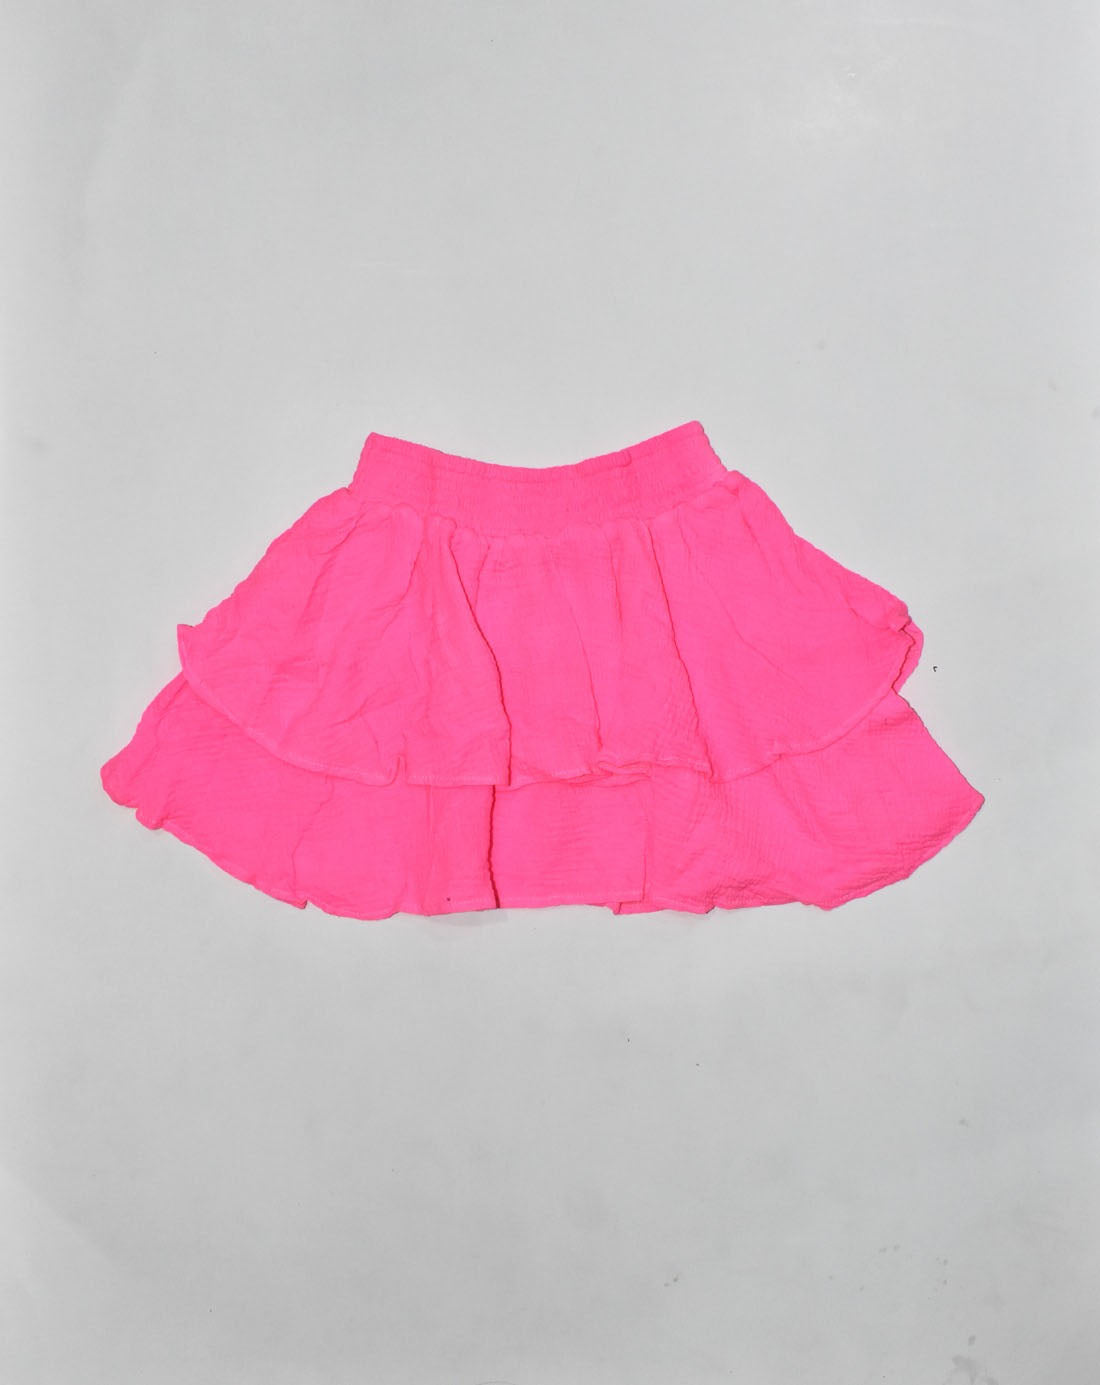 *Neon Pink Ruffle Skirt*